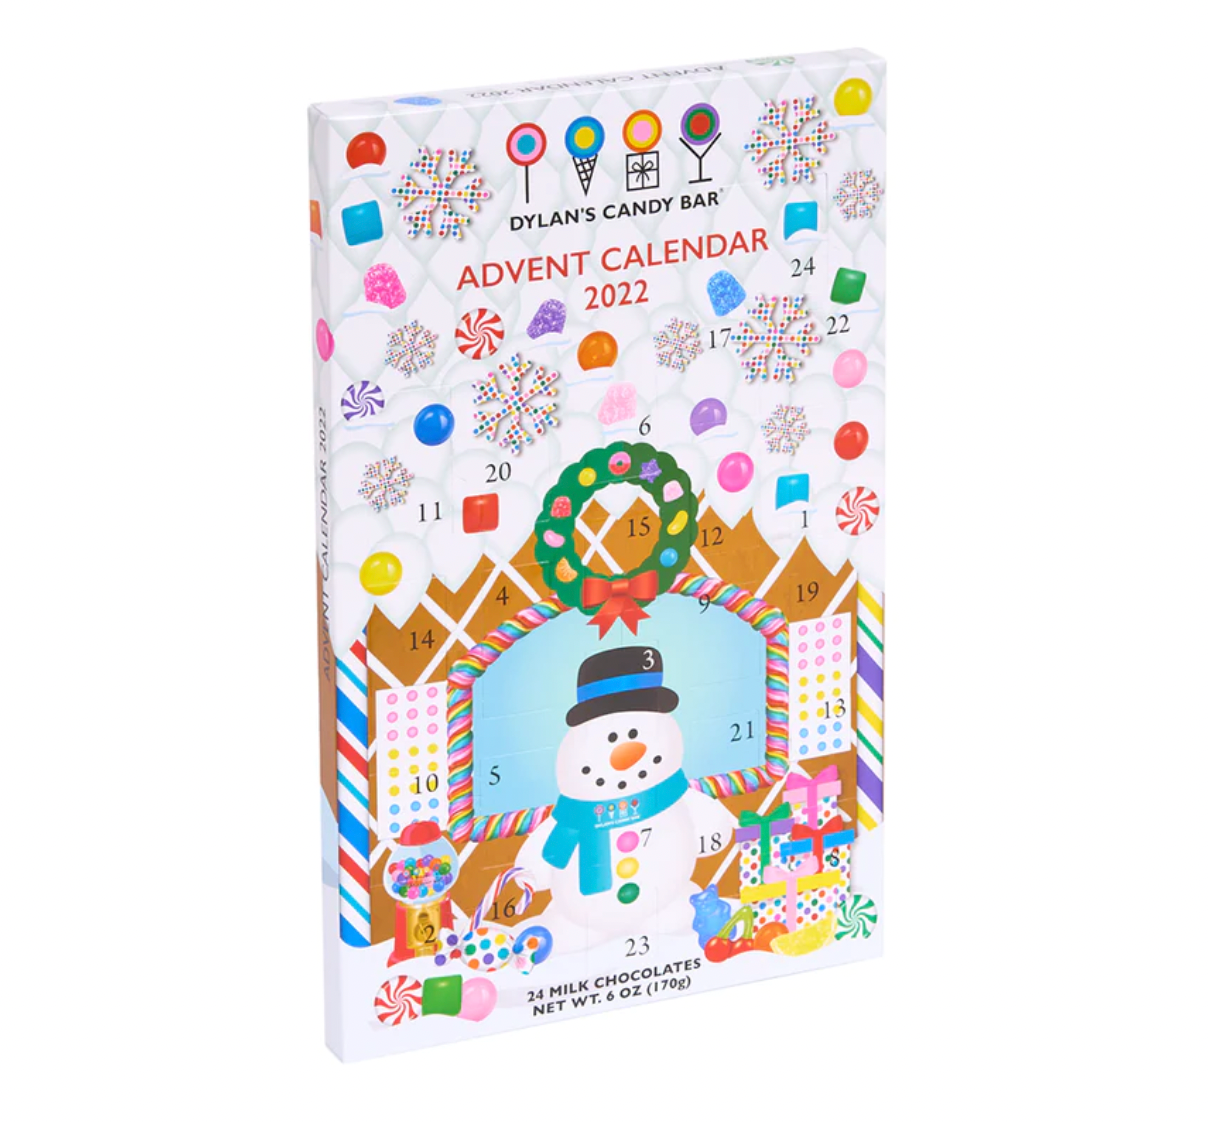 Dylan's Candy Bar Advent Calendar